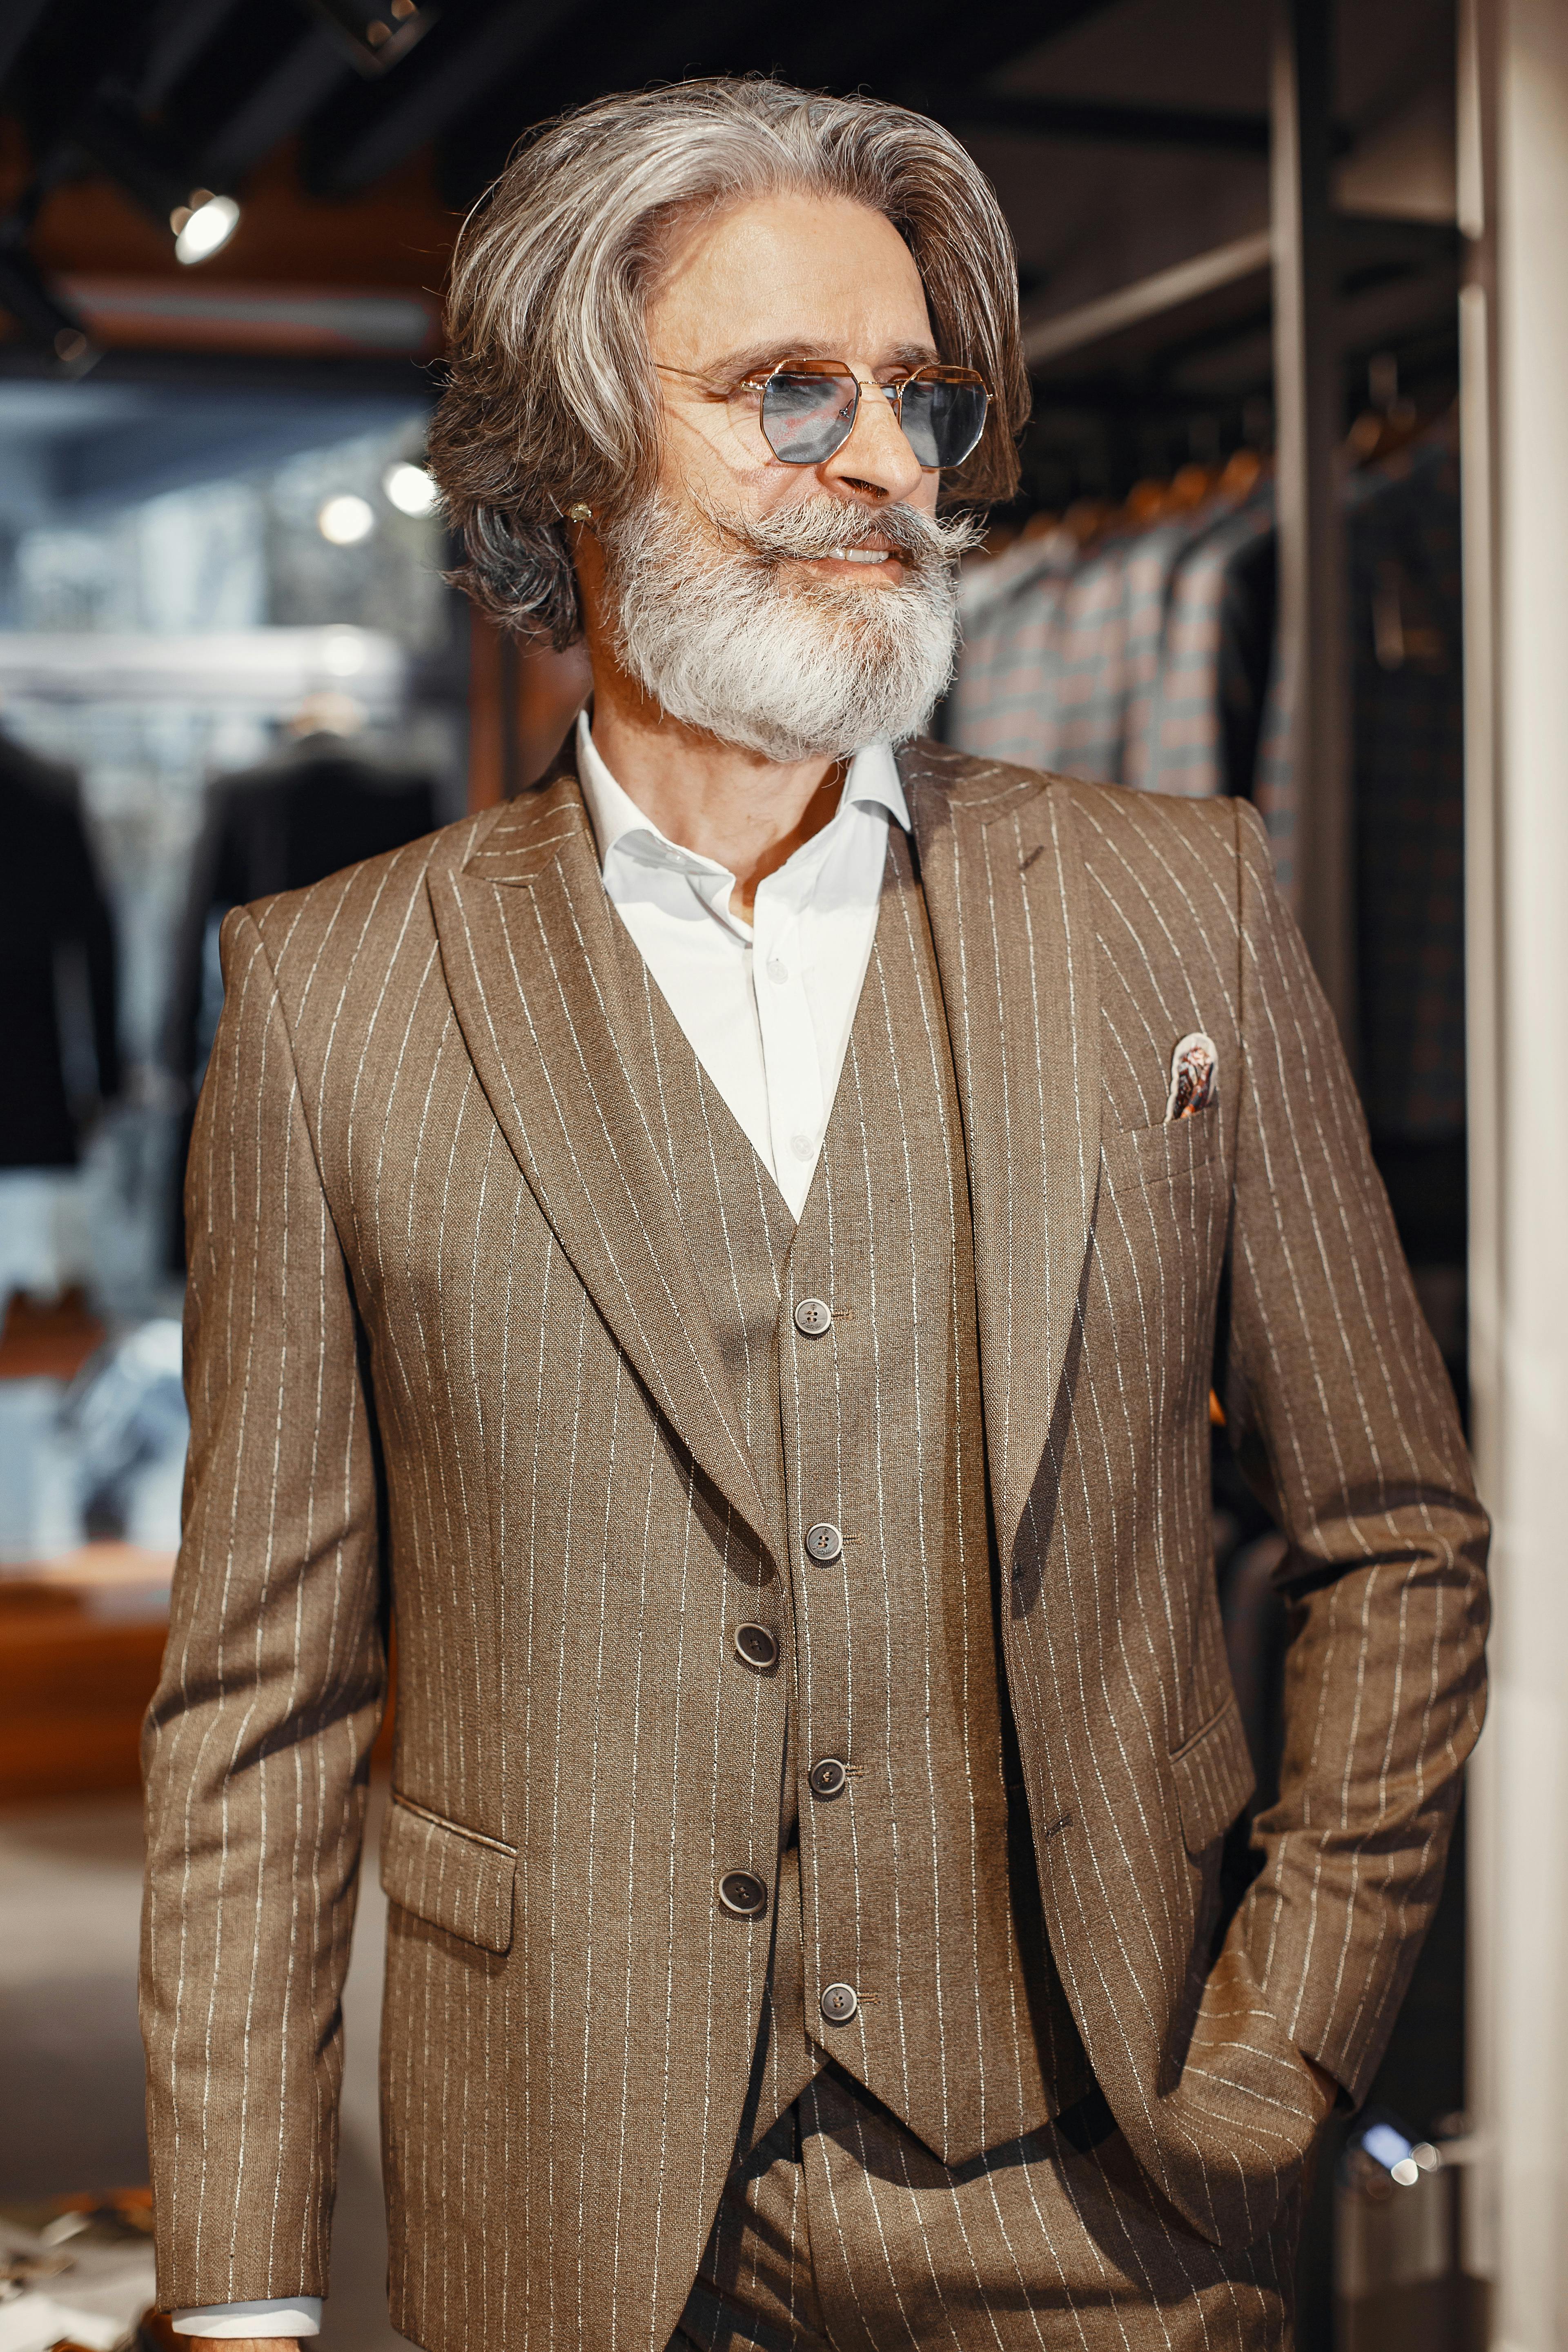 A confident elderly man in a suit | Source: Pexels